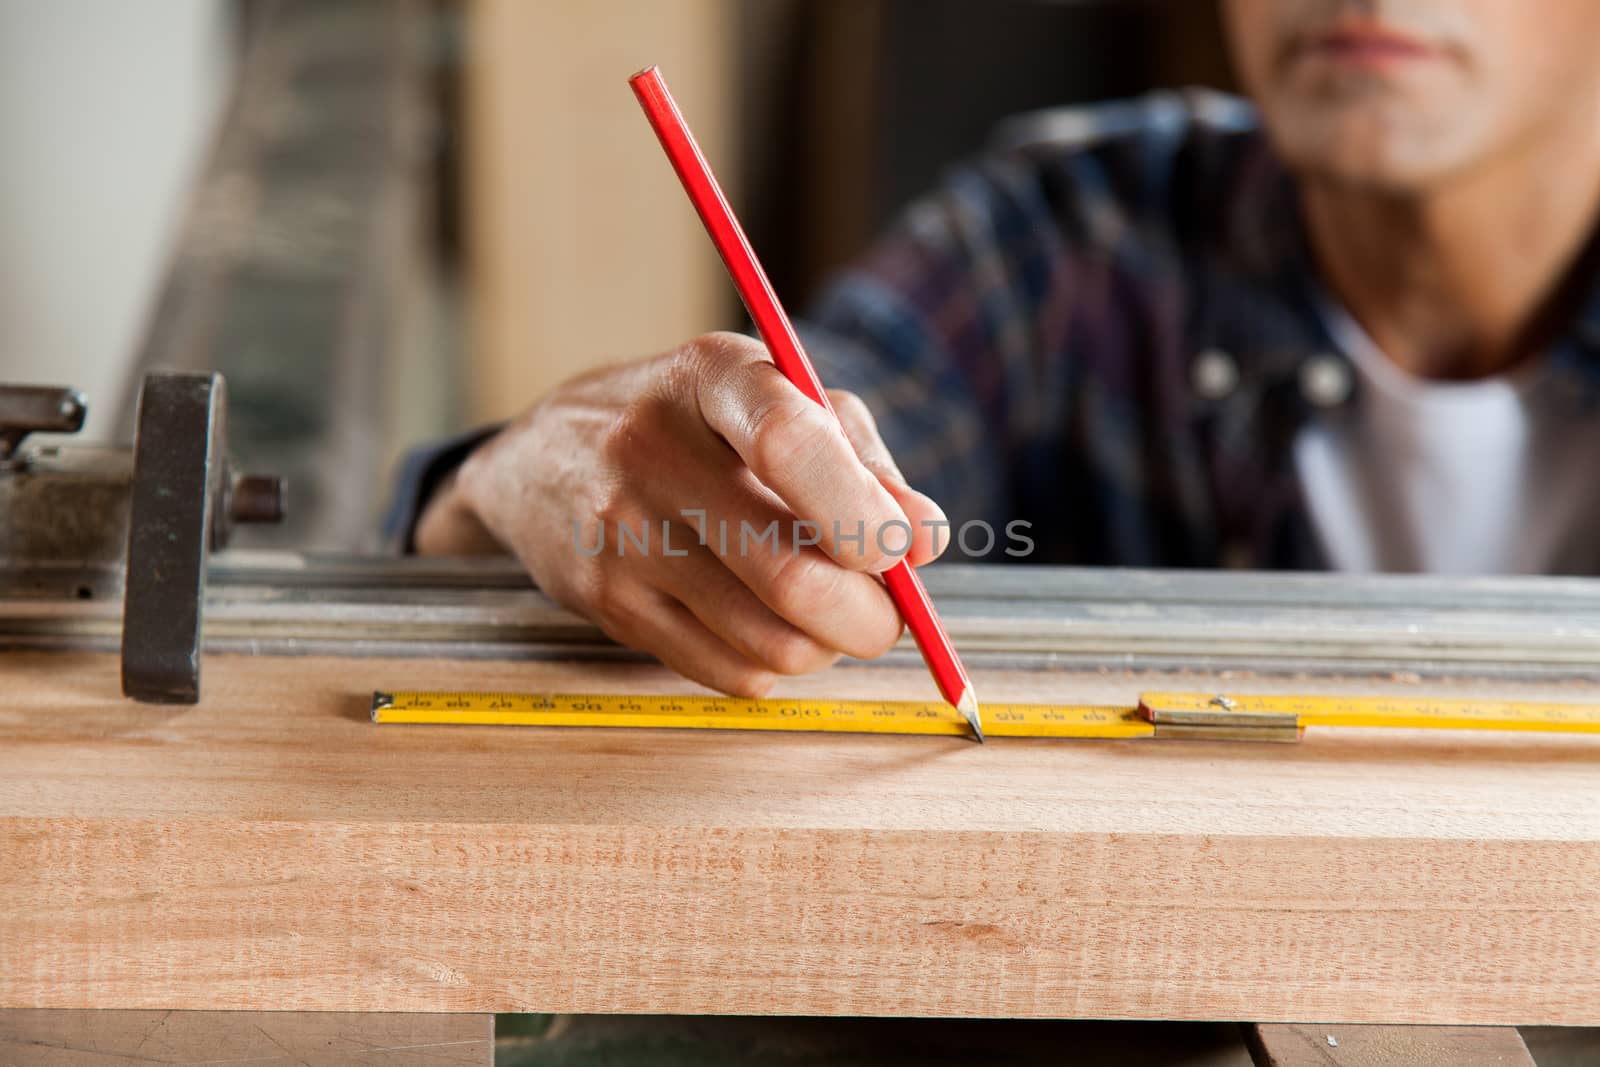 Serious carpenter marking a plank